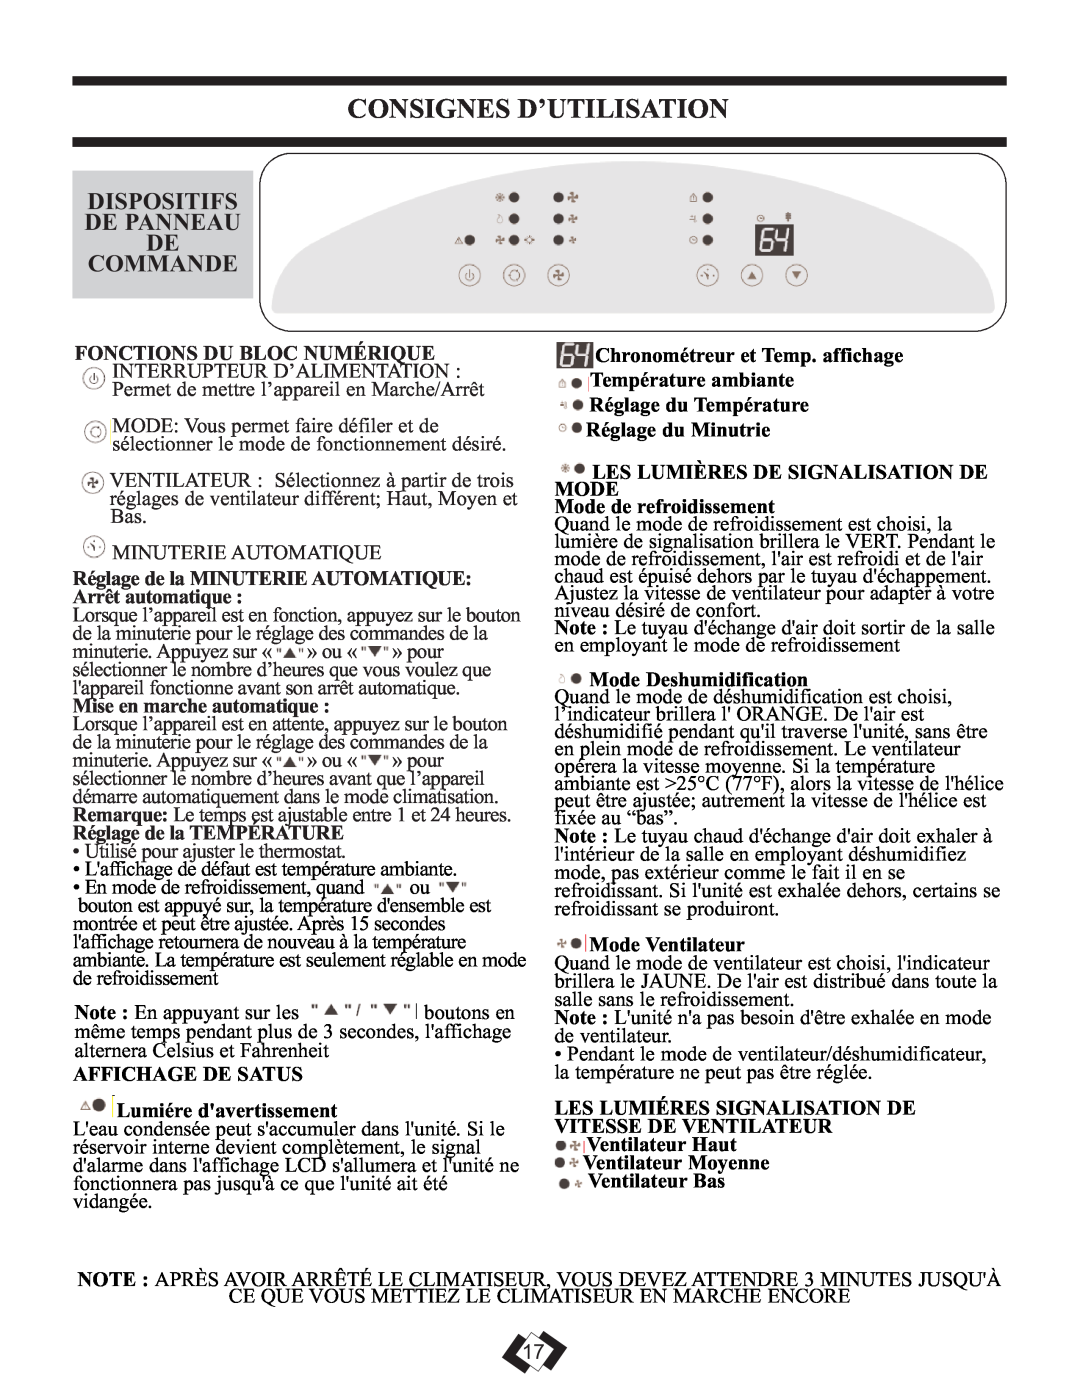 Danby DPAC 12099 Dispositifs De Panneau De Commande, Consignes D’Utilisation, Mise en marche automatique, Mode Ventilateur 